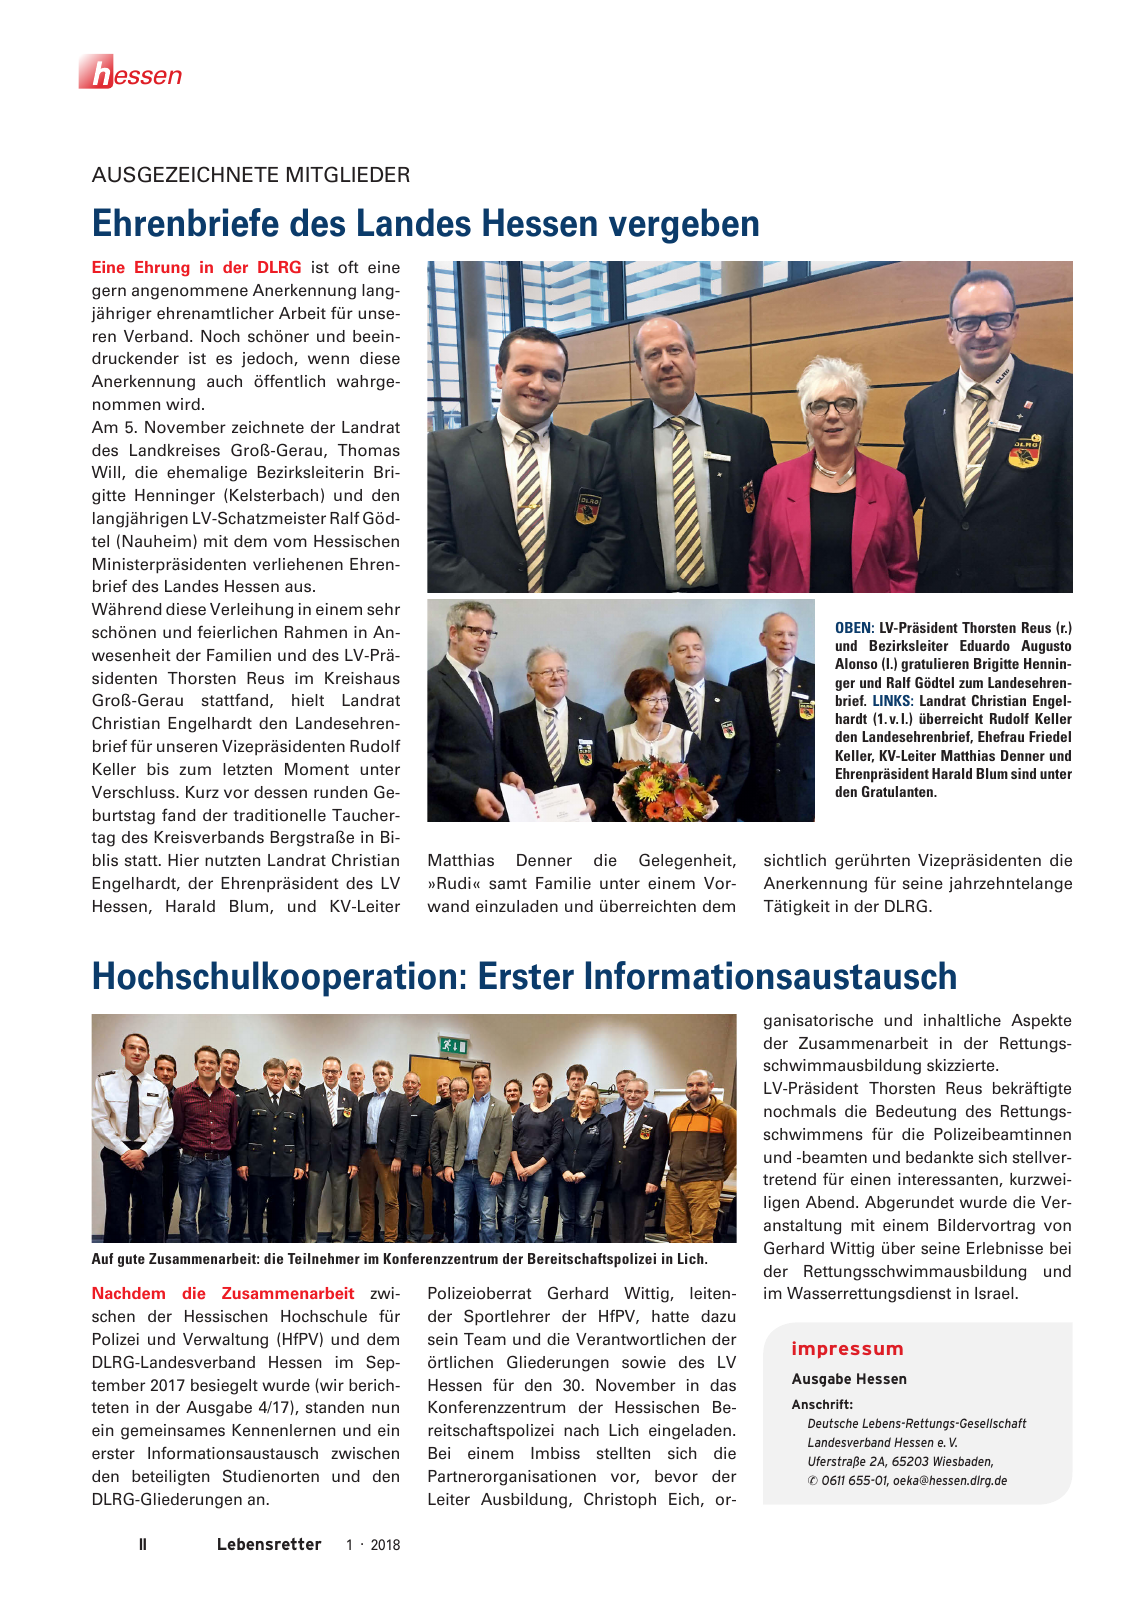 Vorschau Lebensretter 1/2018 - Regionalausgabe Hessen Seite 4